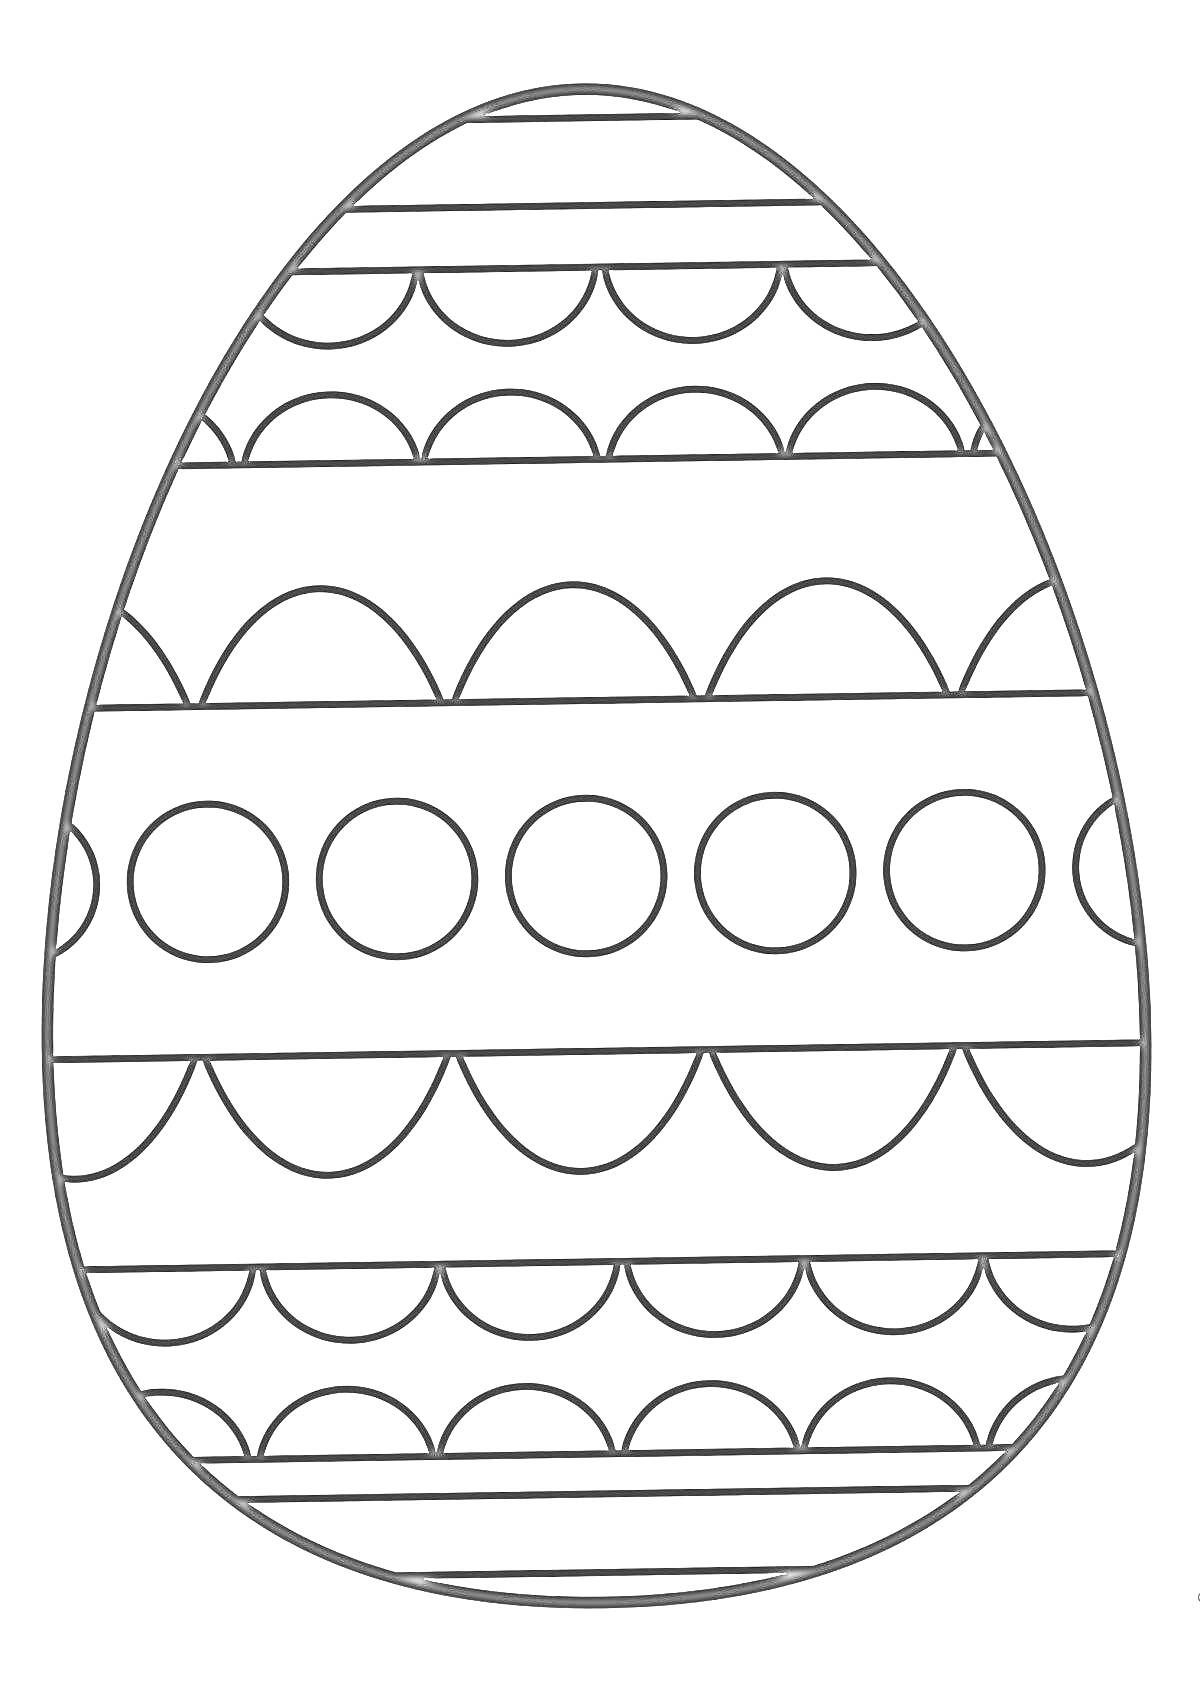 Раскраска Пасхальное яйцо с узорами кружков и полукругов